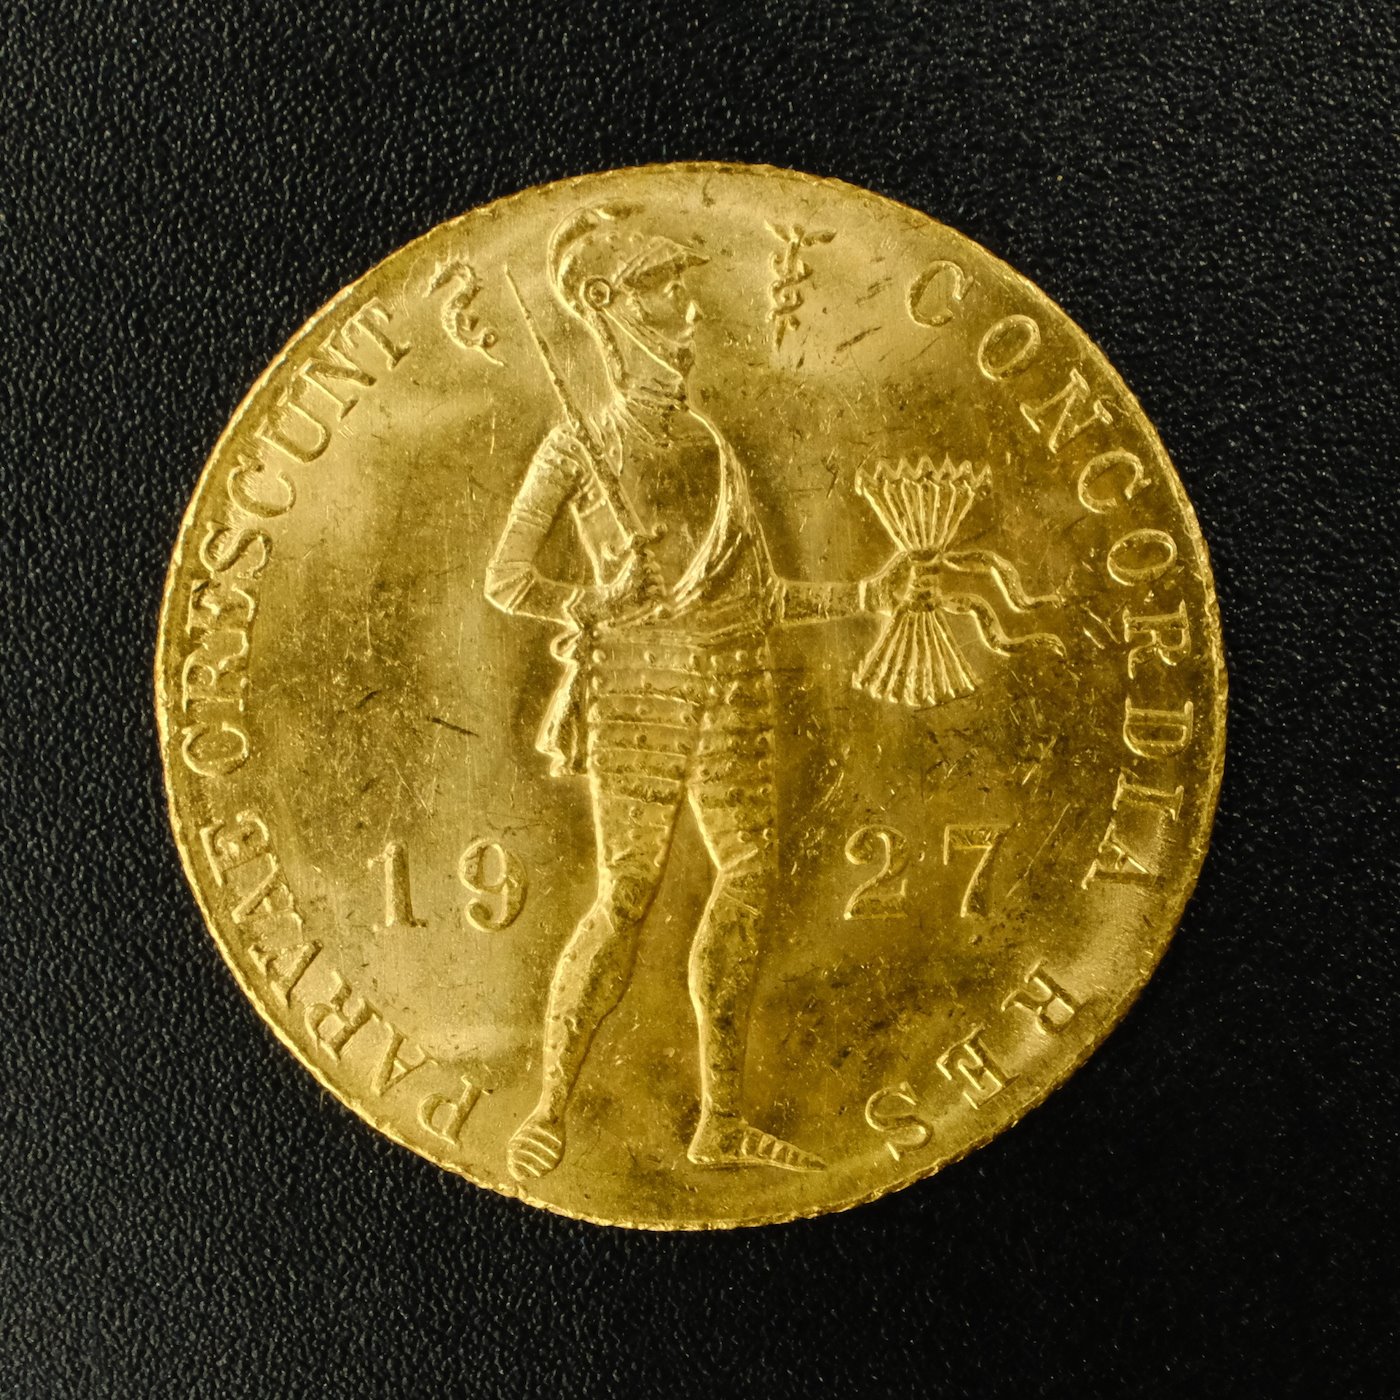 Mince - Nizozemsko zlatý obchodní dukát 1927 Wilhelmina, zlato 983/1000, hrubá hmotnost 3,494g